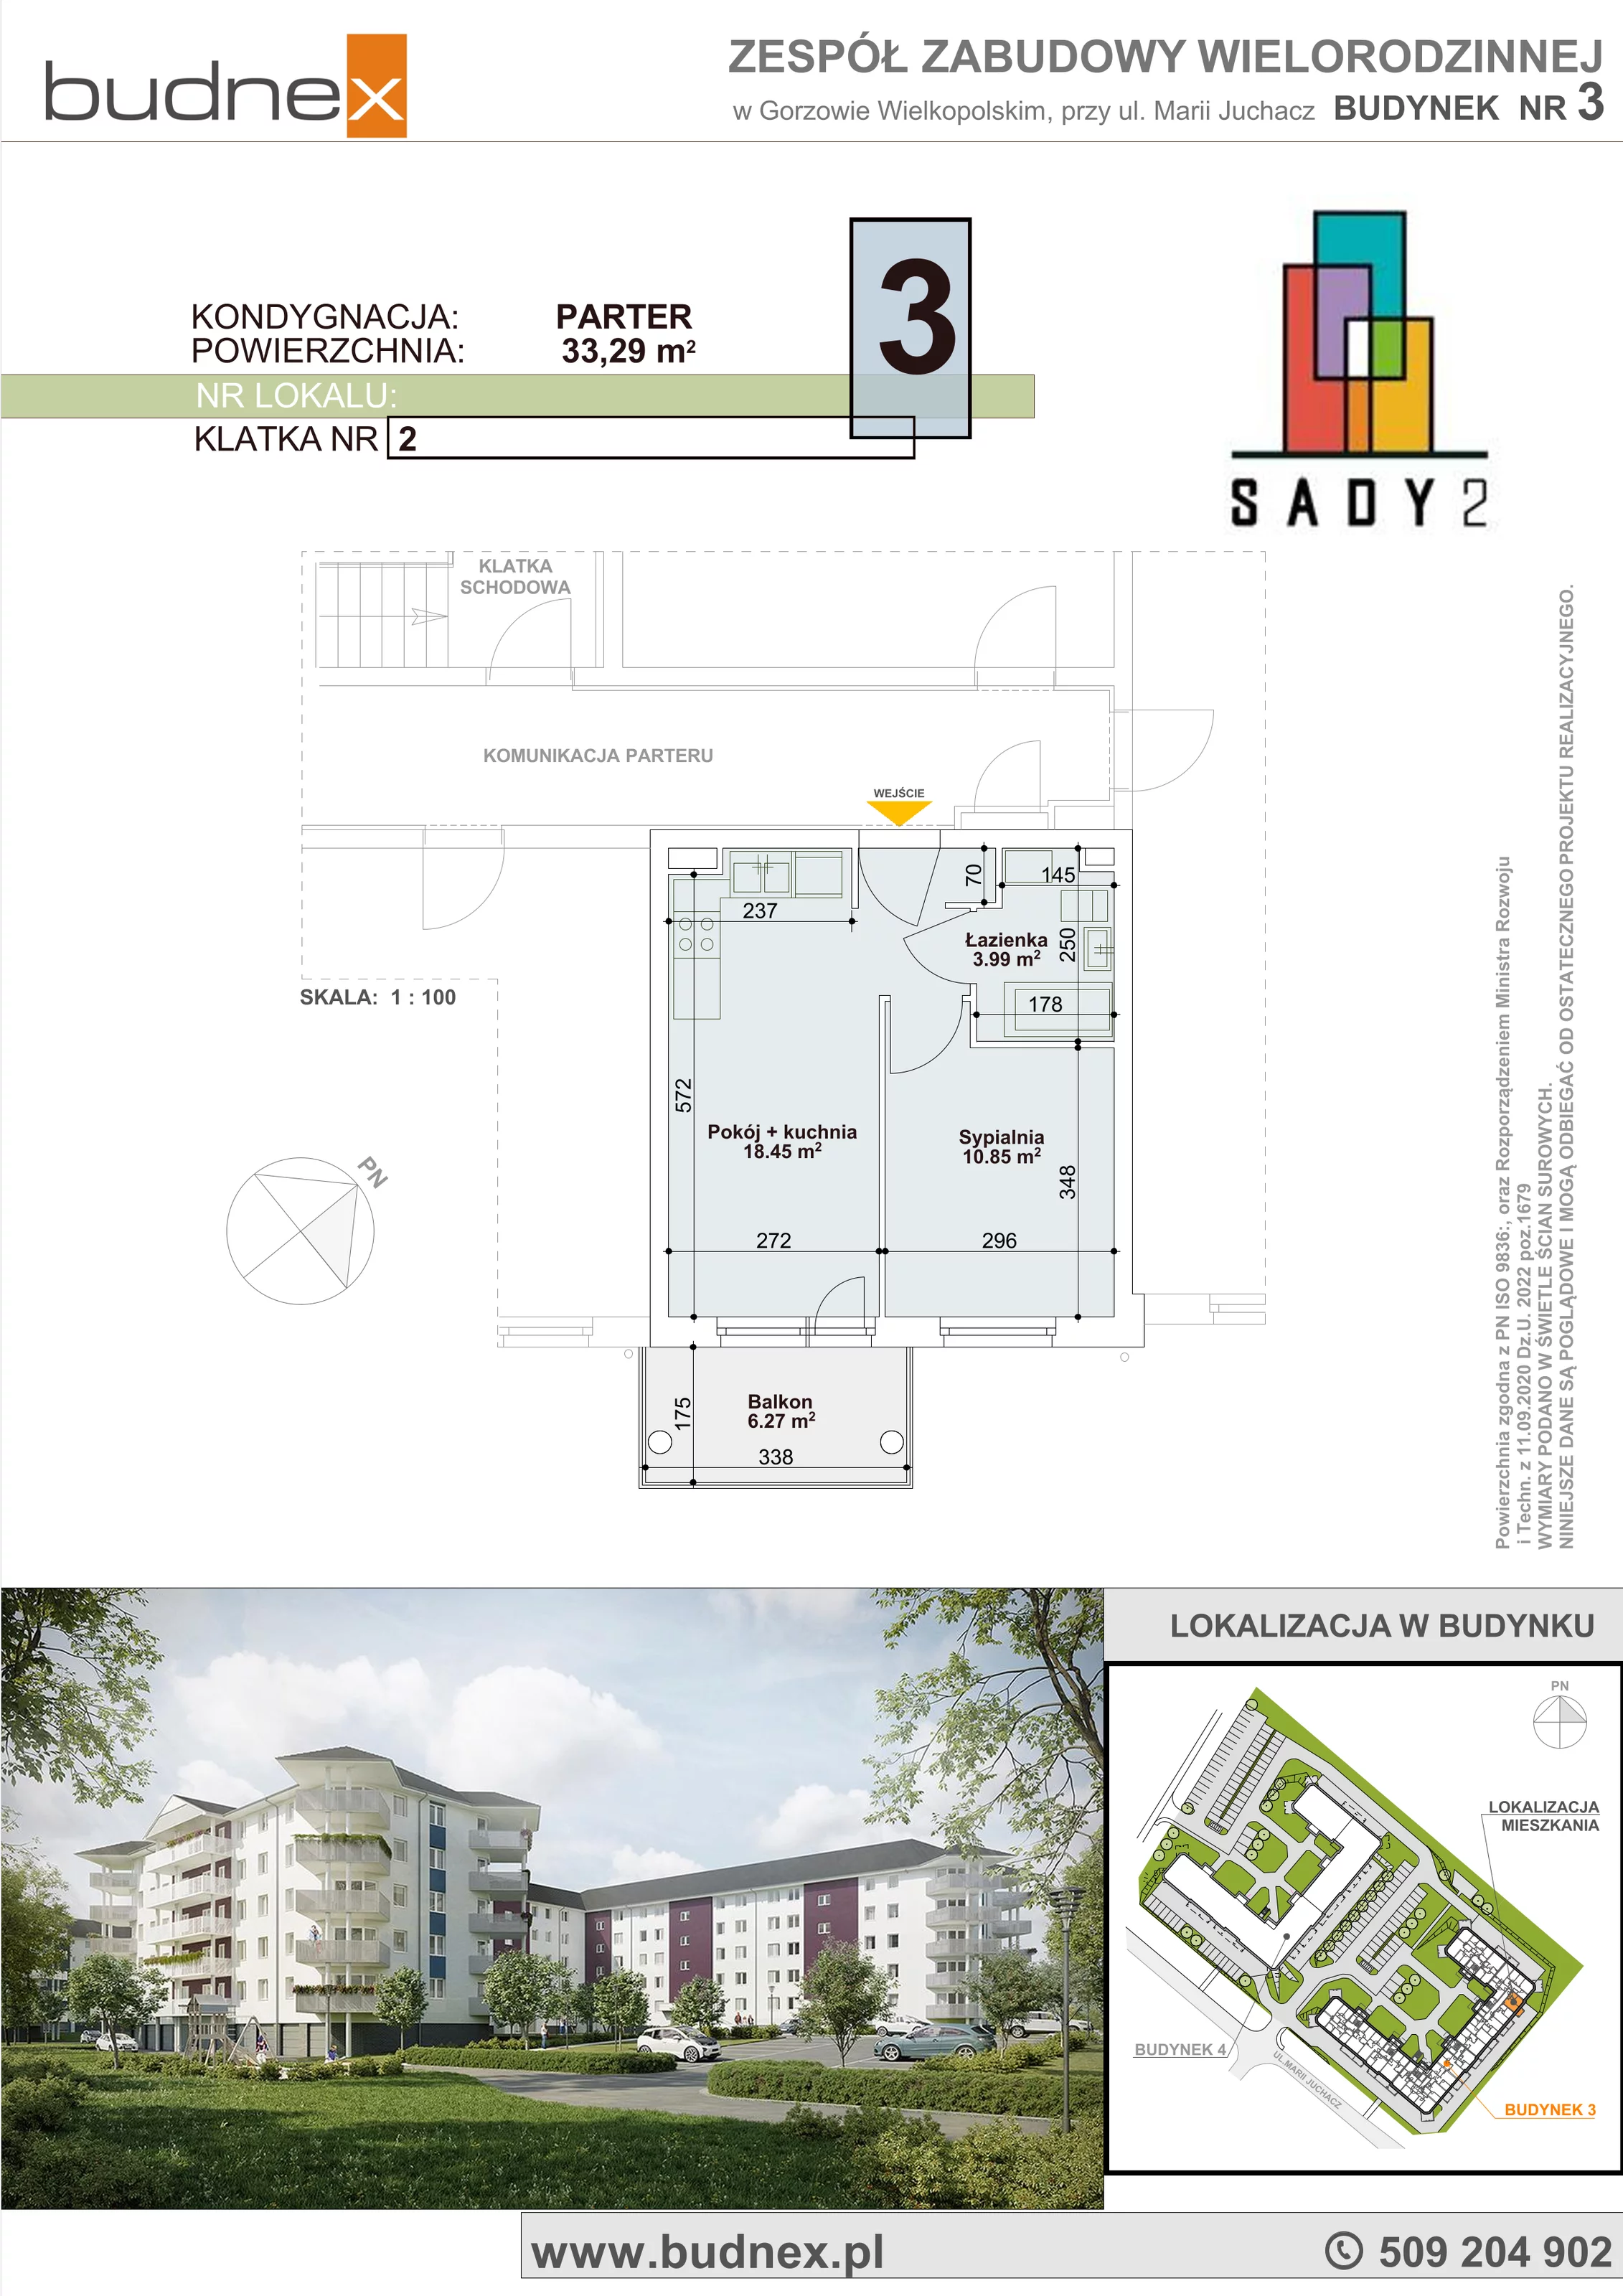 Mieszkanie 33,29 m², parter, oferta nr 2/M3, Sady II Bud. 3, Gorzów Wielkopolski, ul. Marii Juchacz